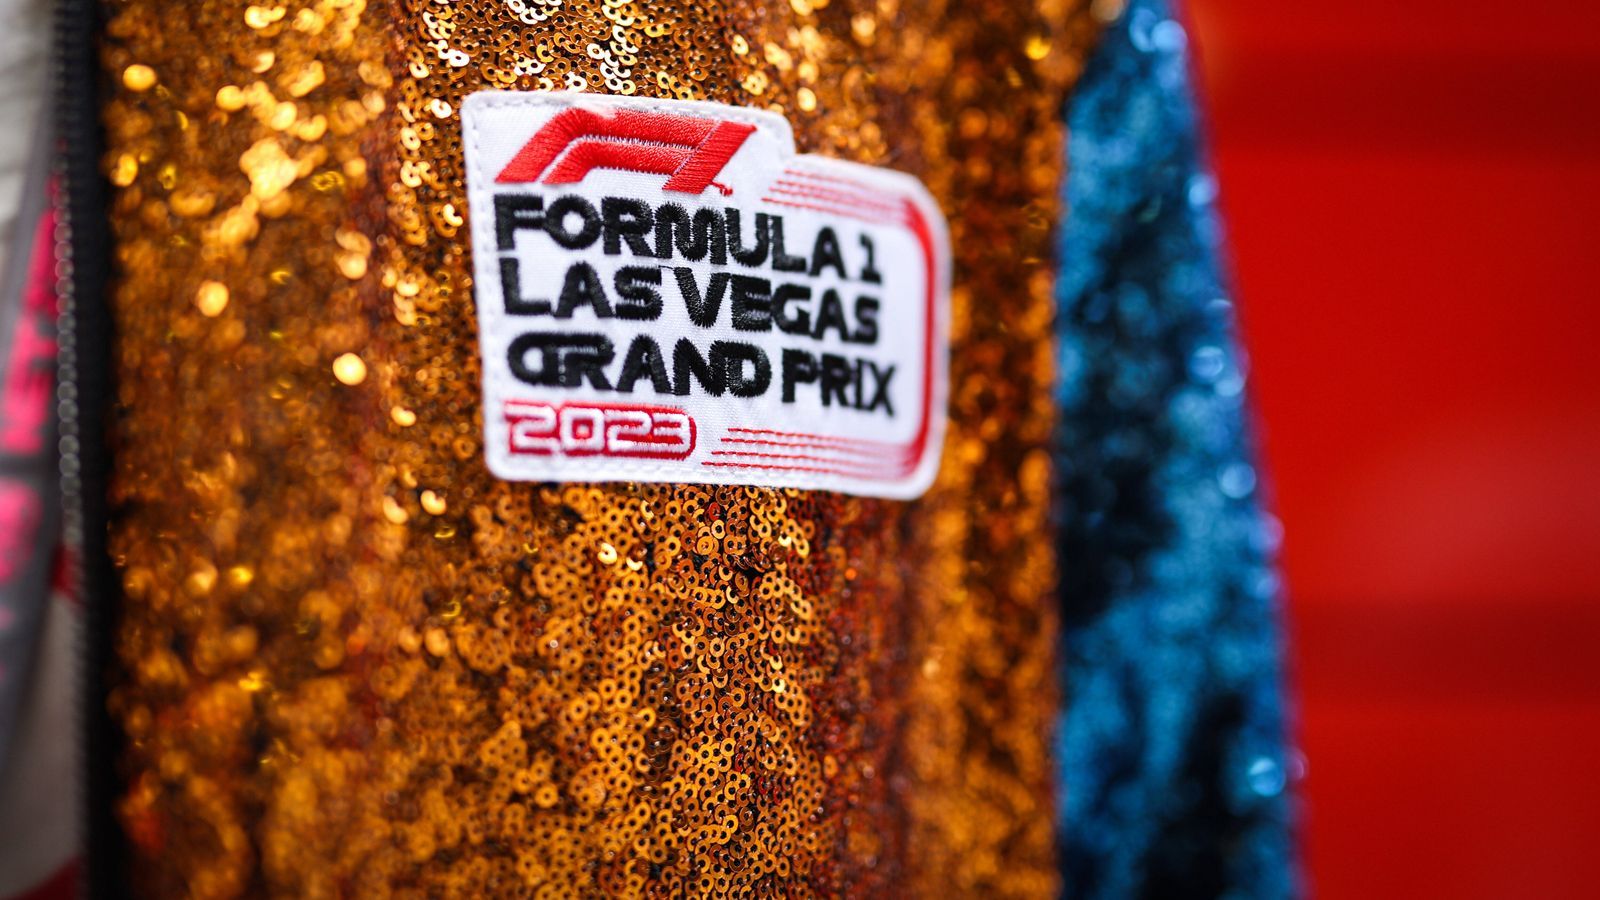 <strong>Las Vegas rüstet sich für 25.000 VIP-Gäste</strong><br>Dass es sich beim Vegas-GP um ein Rennen der besonderen Art handeln soll, zeigen die Preise. Laut "auto, motor und sport" ist der Paddock Club mit für 25.000 VIP-Gäste ausgerichtet. Um dabei sein zu können, mussten teils fünfstellige Summen gezahlt werden. Um überhaupt auf die Warteliste zu kommen, mussten schon 1.000 US-Dollar angezahlt werden.